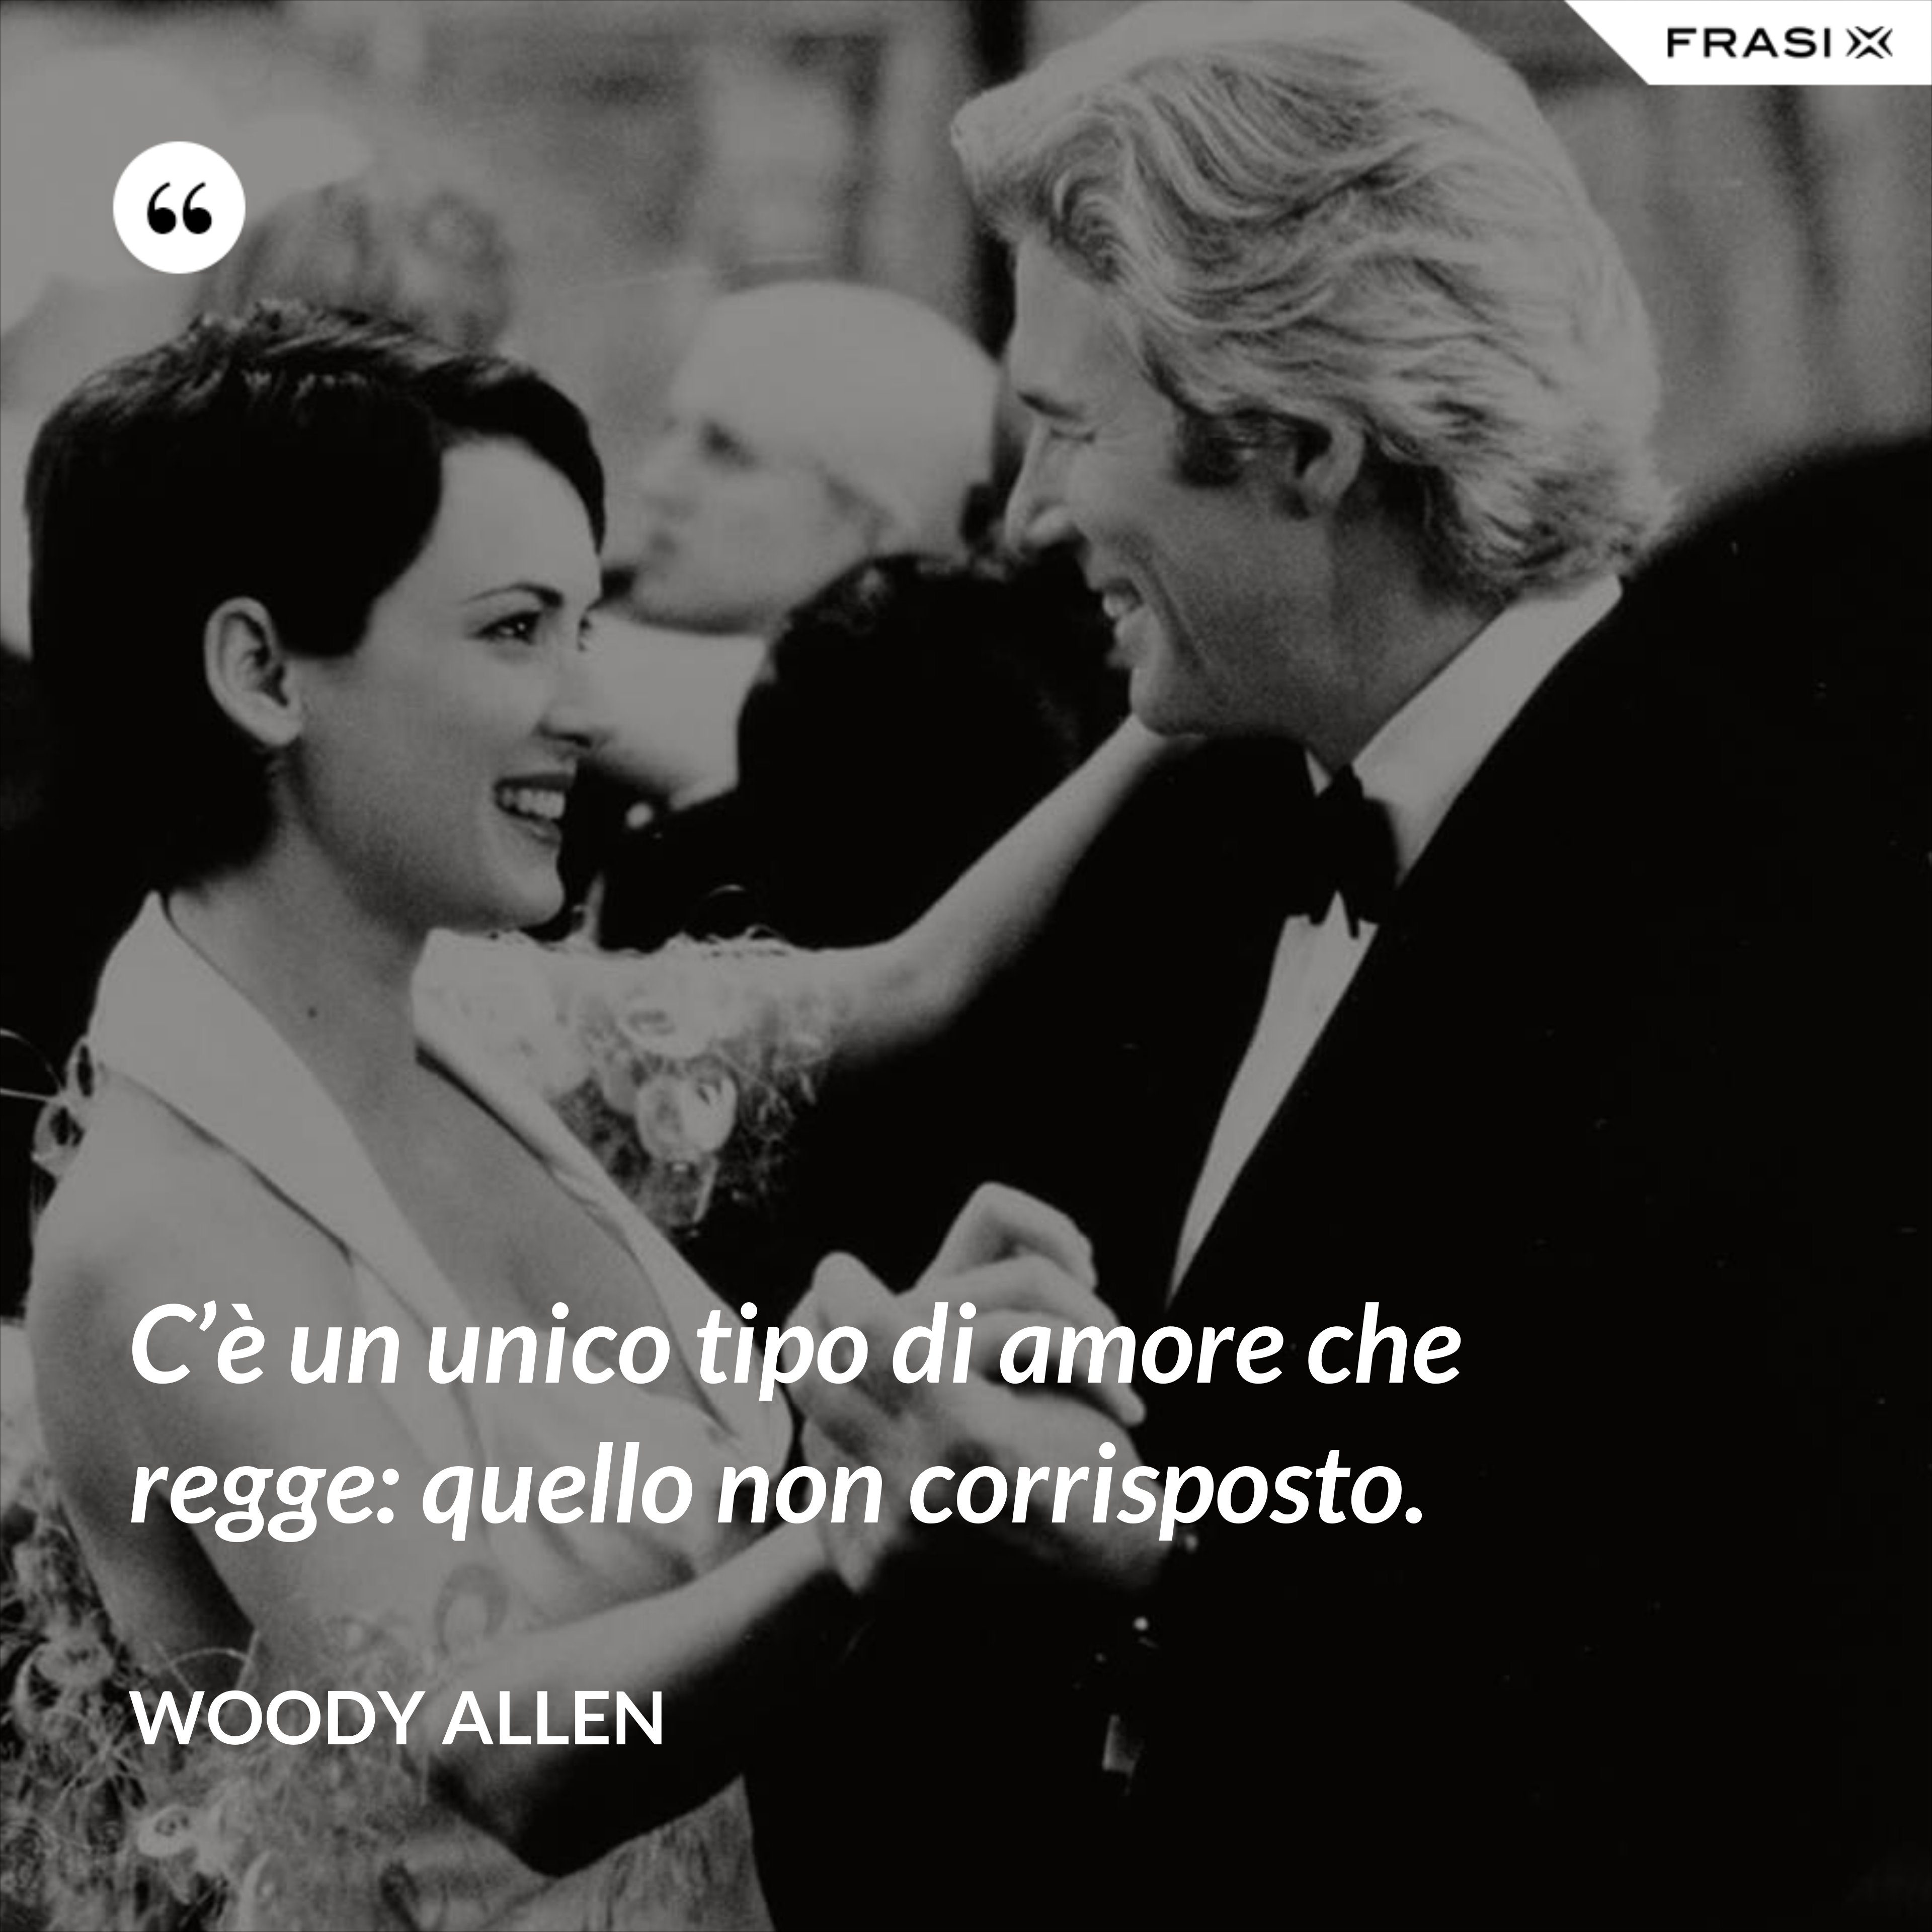 C’è un unico tipo di amore che regge: quello non corrisposto. - Woody Allen